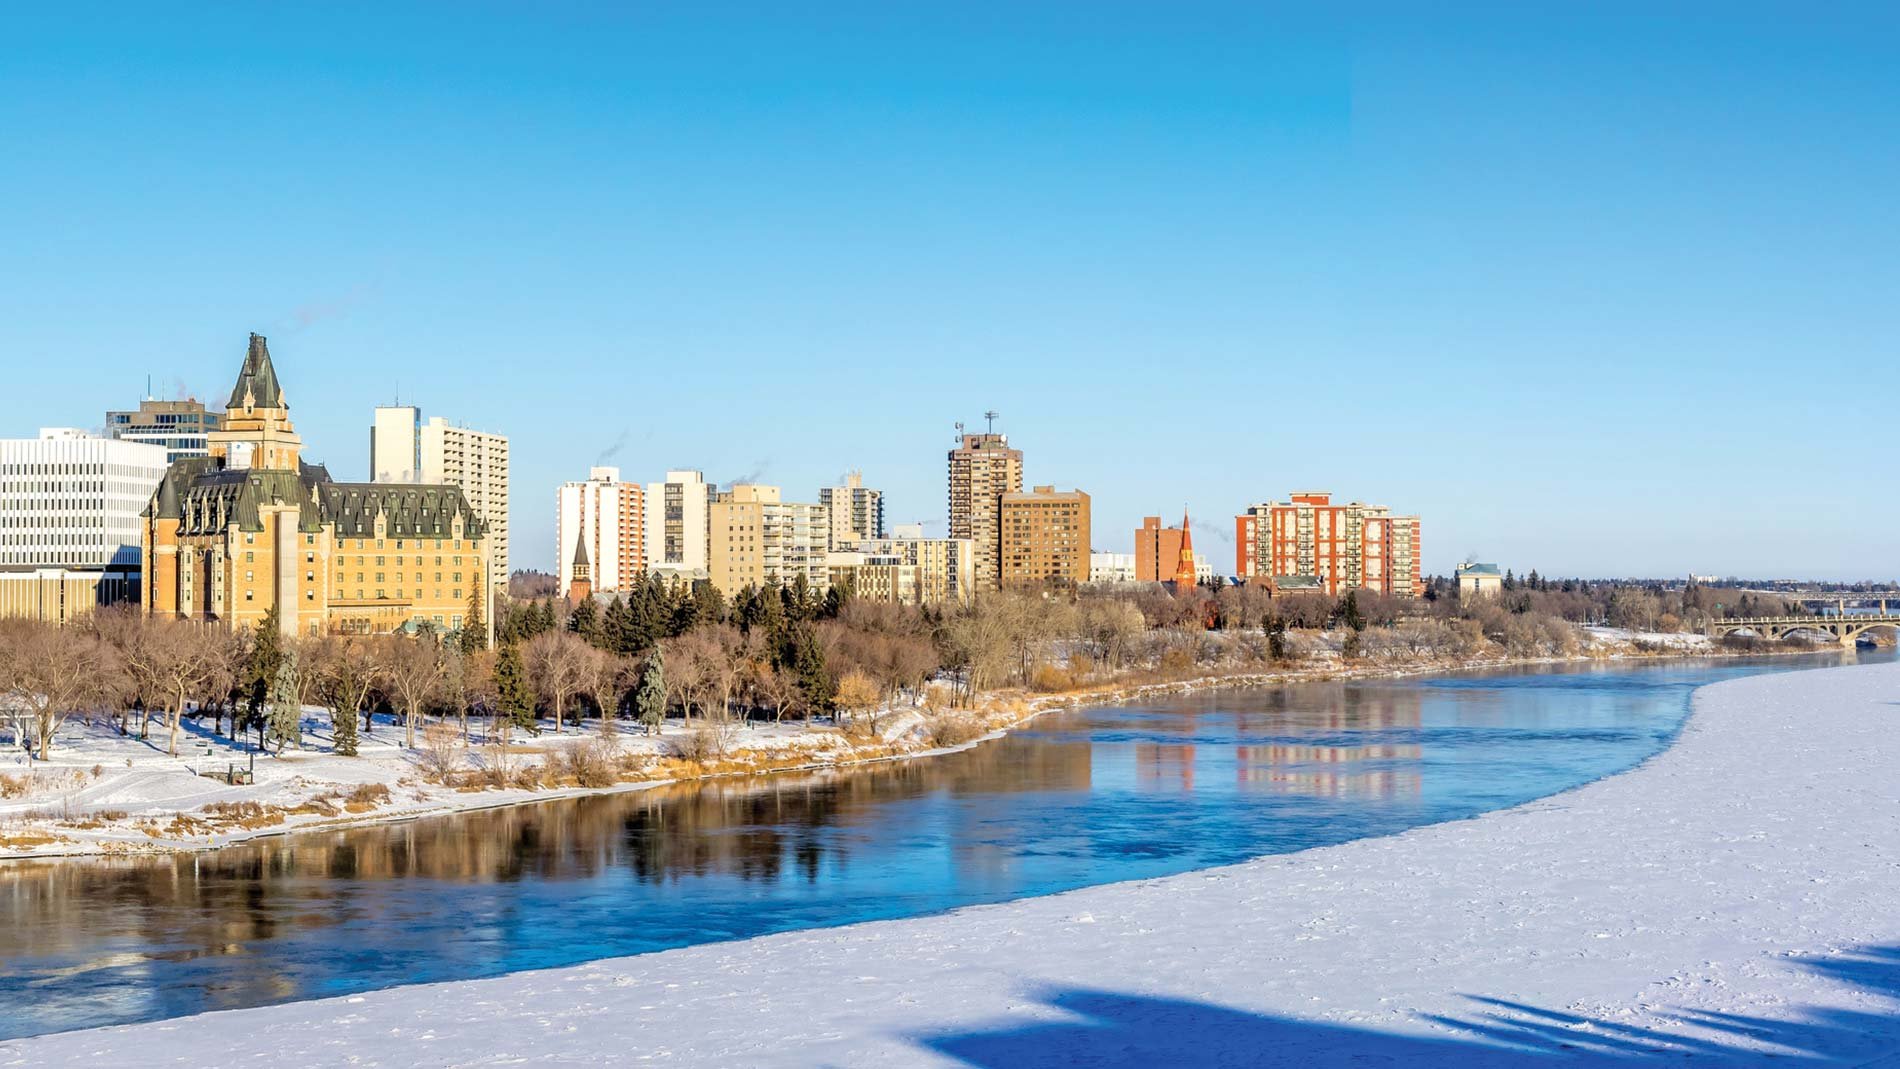 Vue hivernale de la vallée de la rivière Saskatchewan et de la ville de Saskatoon, en Saskatchewan, durant le jour.